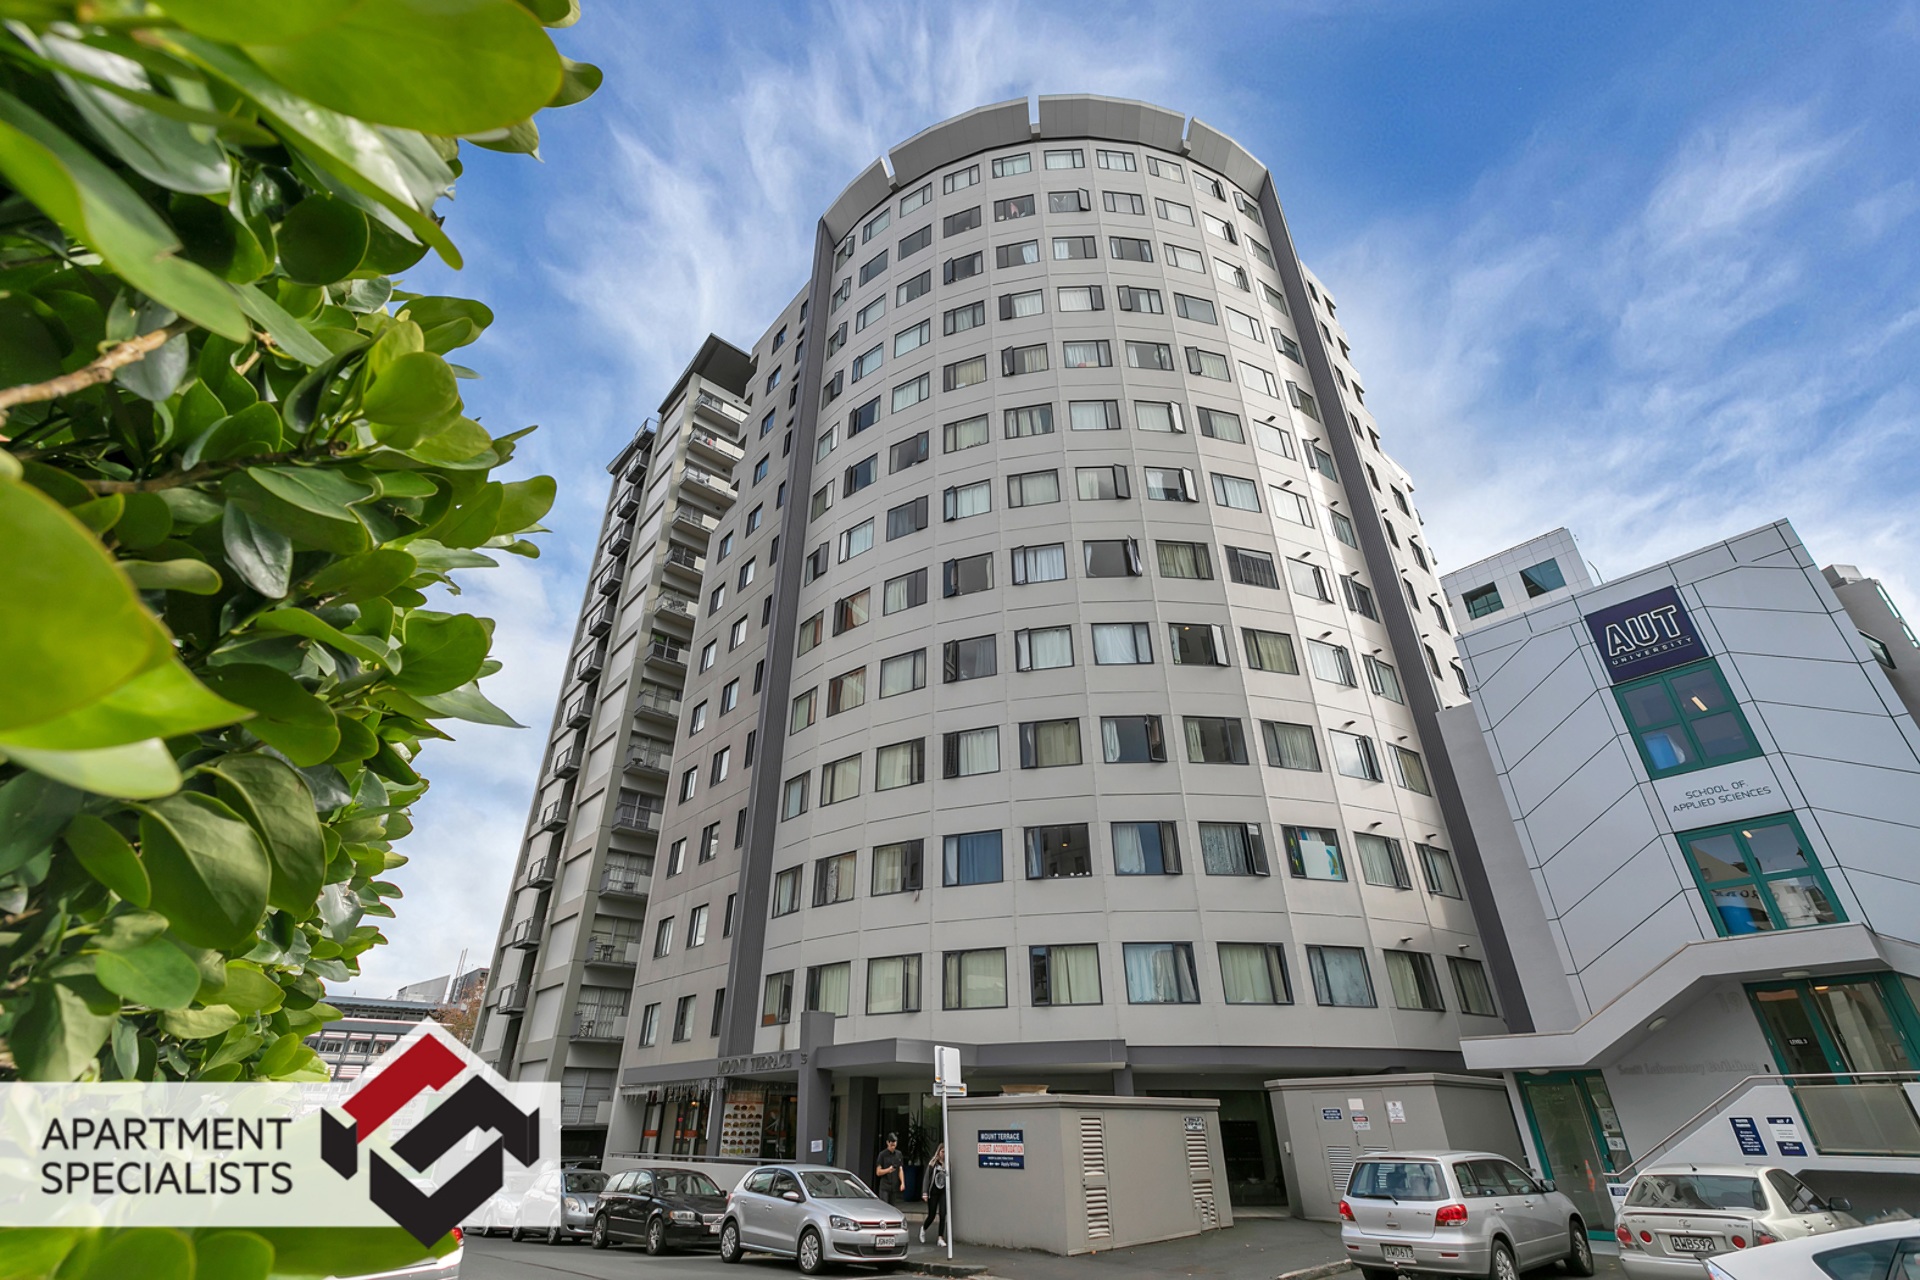 1 | 33 Mount Terrace, City Centre | Apartment Specialists